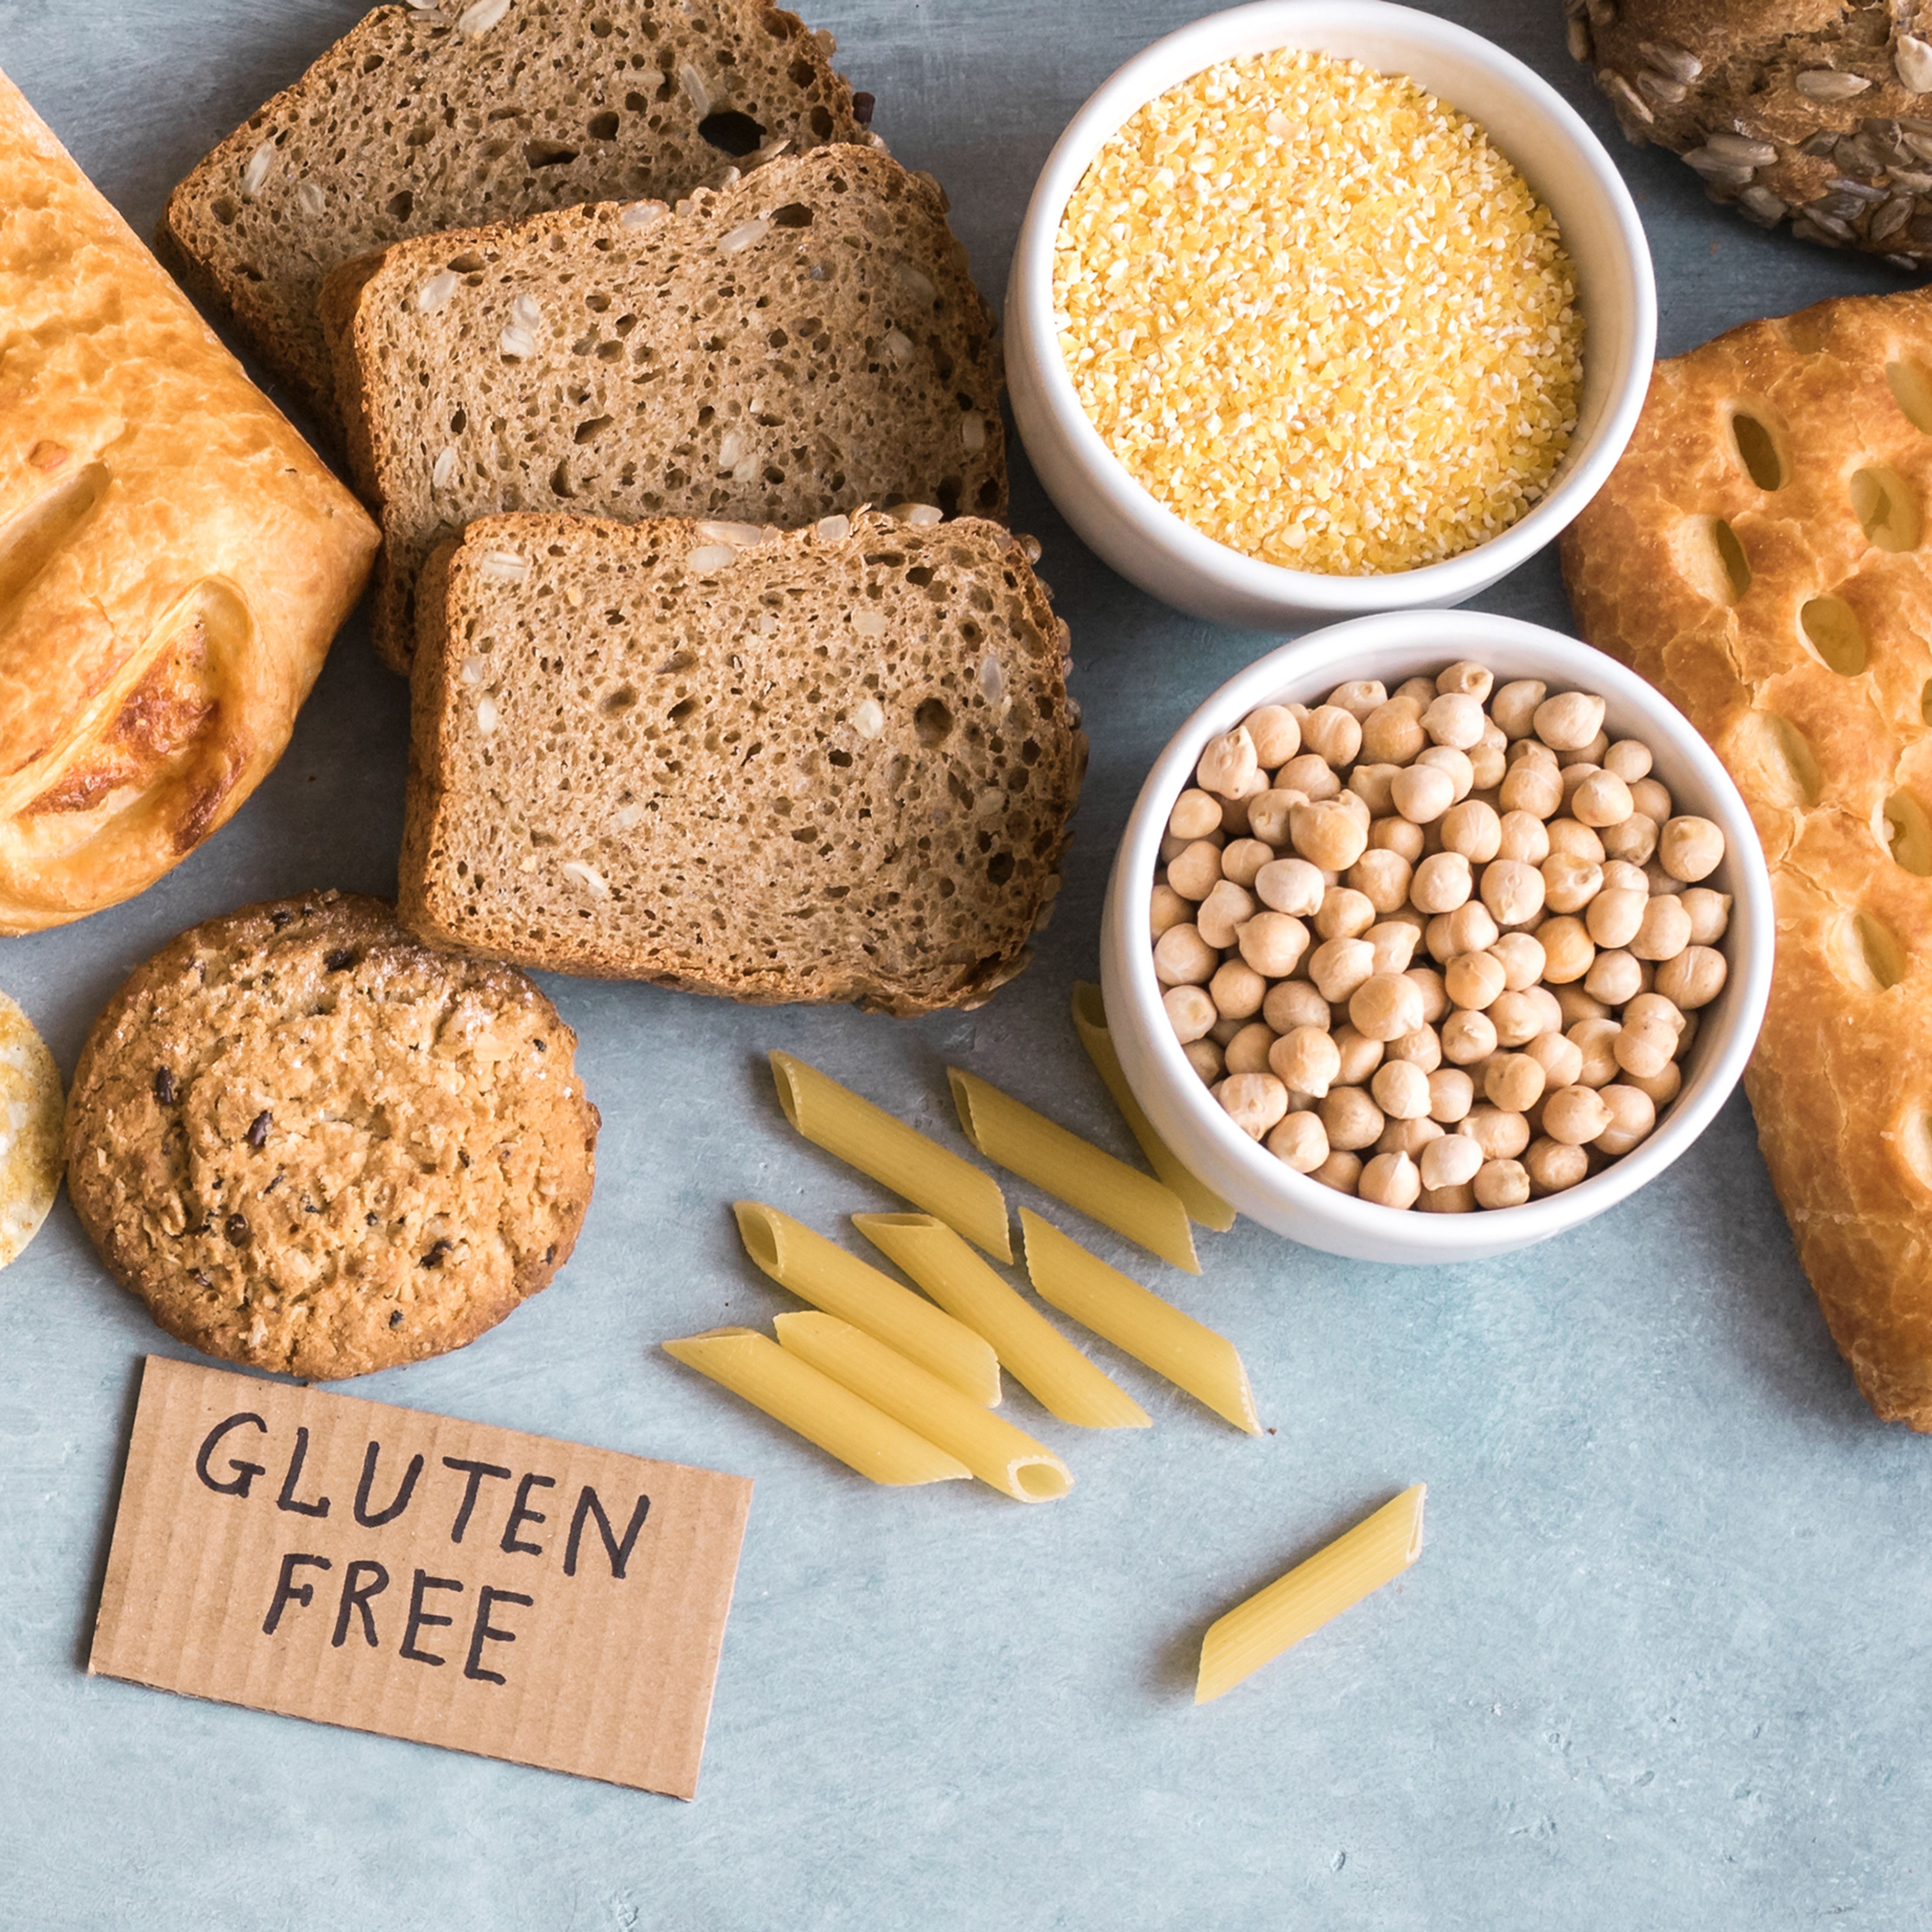 Les farines sans gluten sont nombreuses, comment les utiliser?